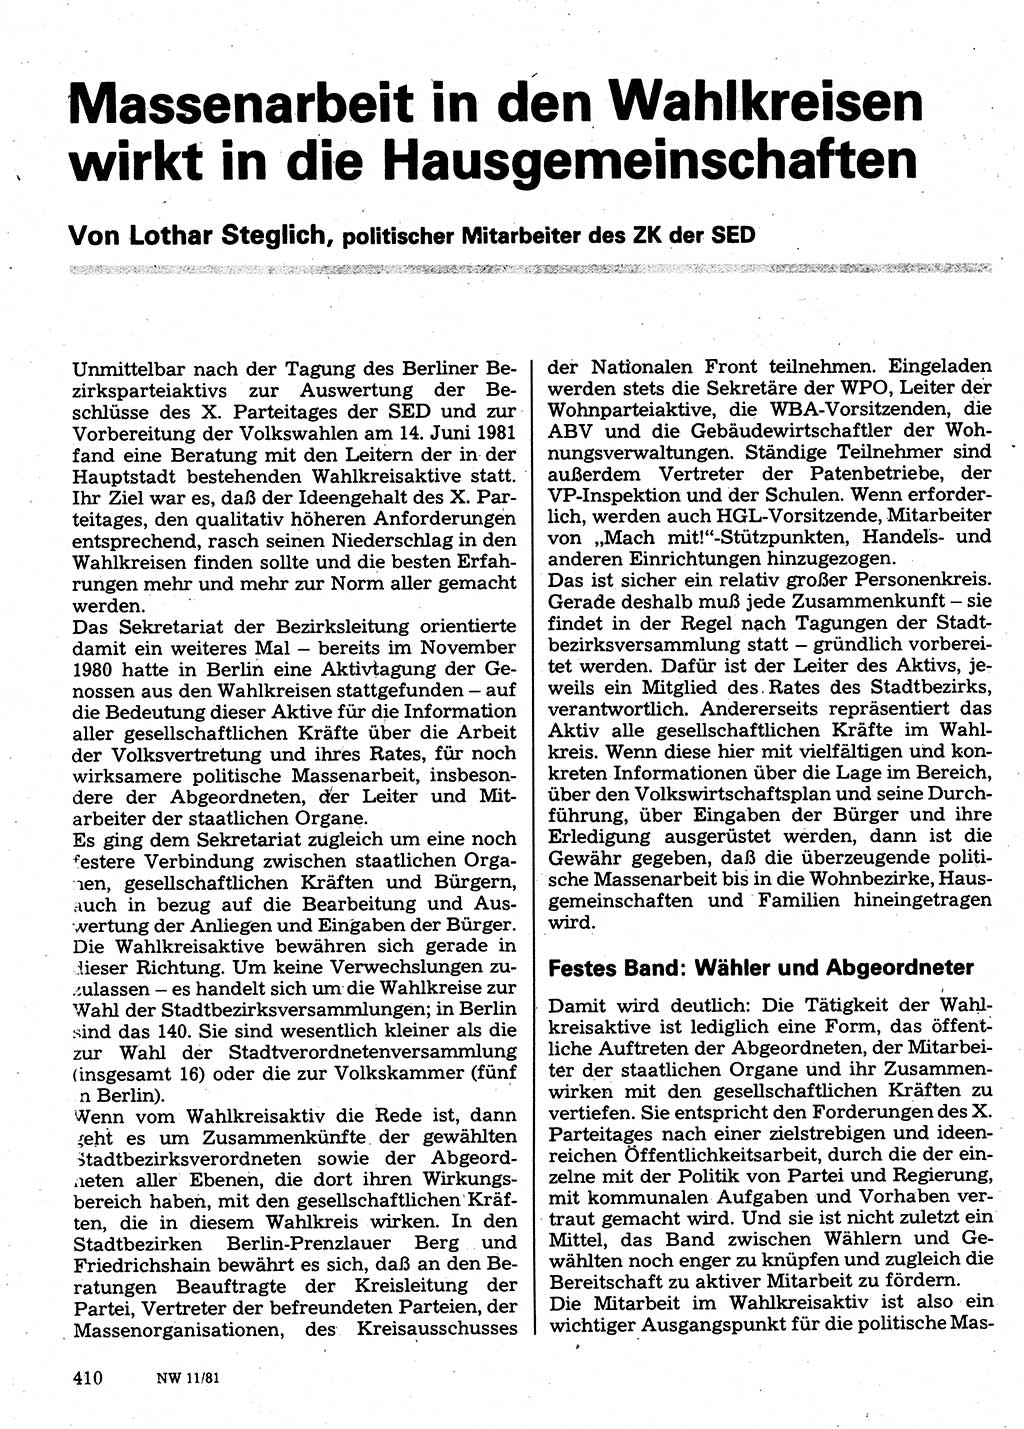 Neuer Weg (NW), Organ des Zentralkomitees (ZK) der SED (Sozialistische Einheitspartei Deutschlands) für Fragen des Parteilebens, 36. Jahrgang [Deutsche Demokratische Republik (DDR)] 1981, Seite 410 (NW ZK SED DDR 1981, S. 410)